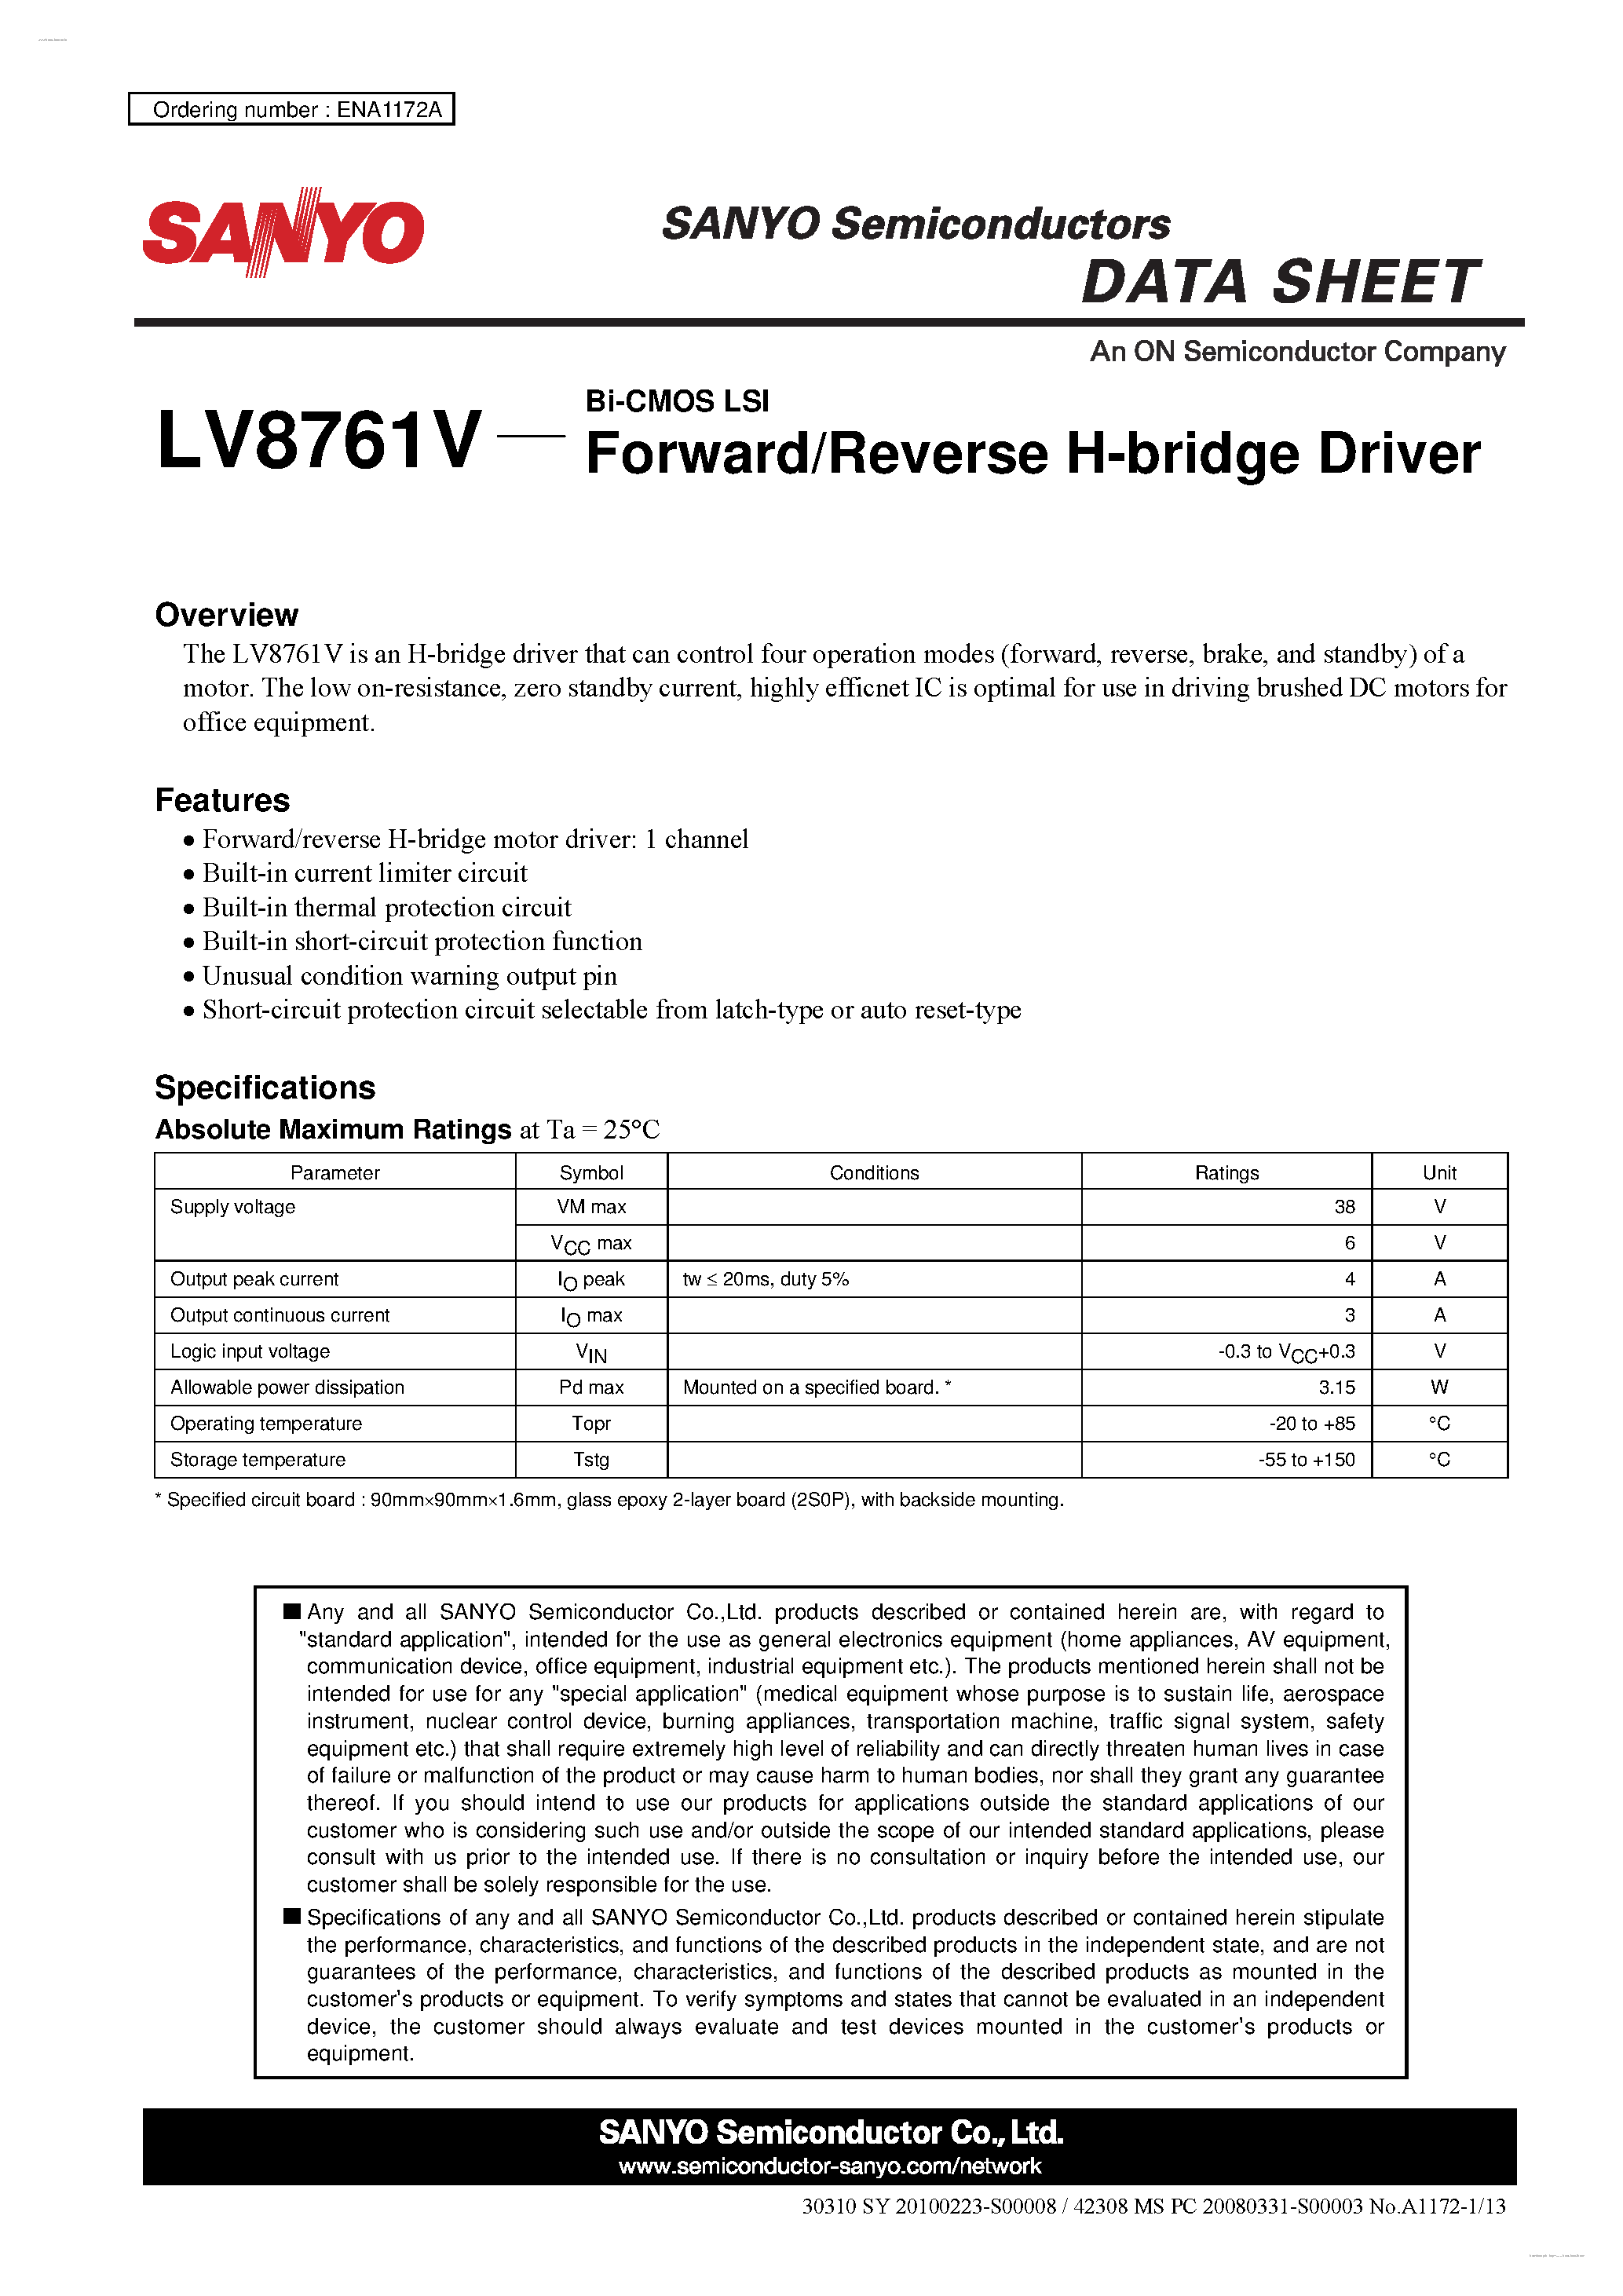 Даташит LV8761V - Forward/Reverse H-bridge Driver страница 1